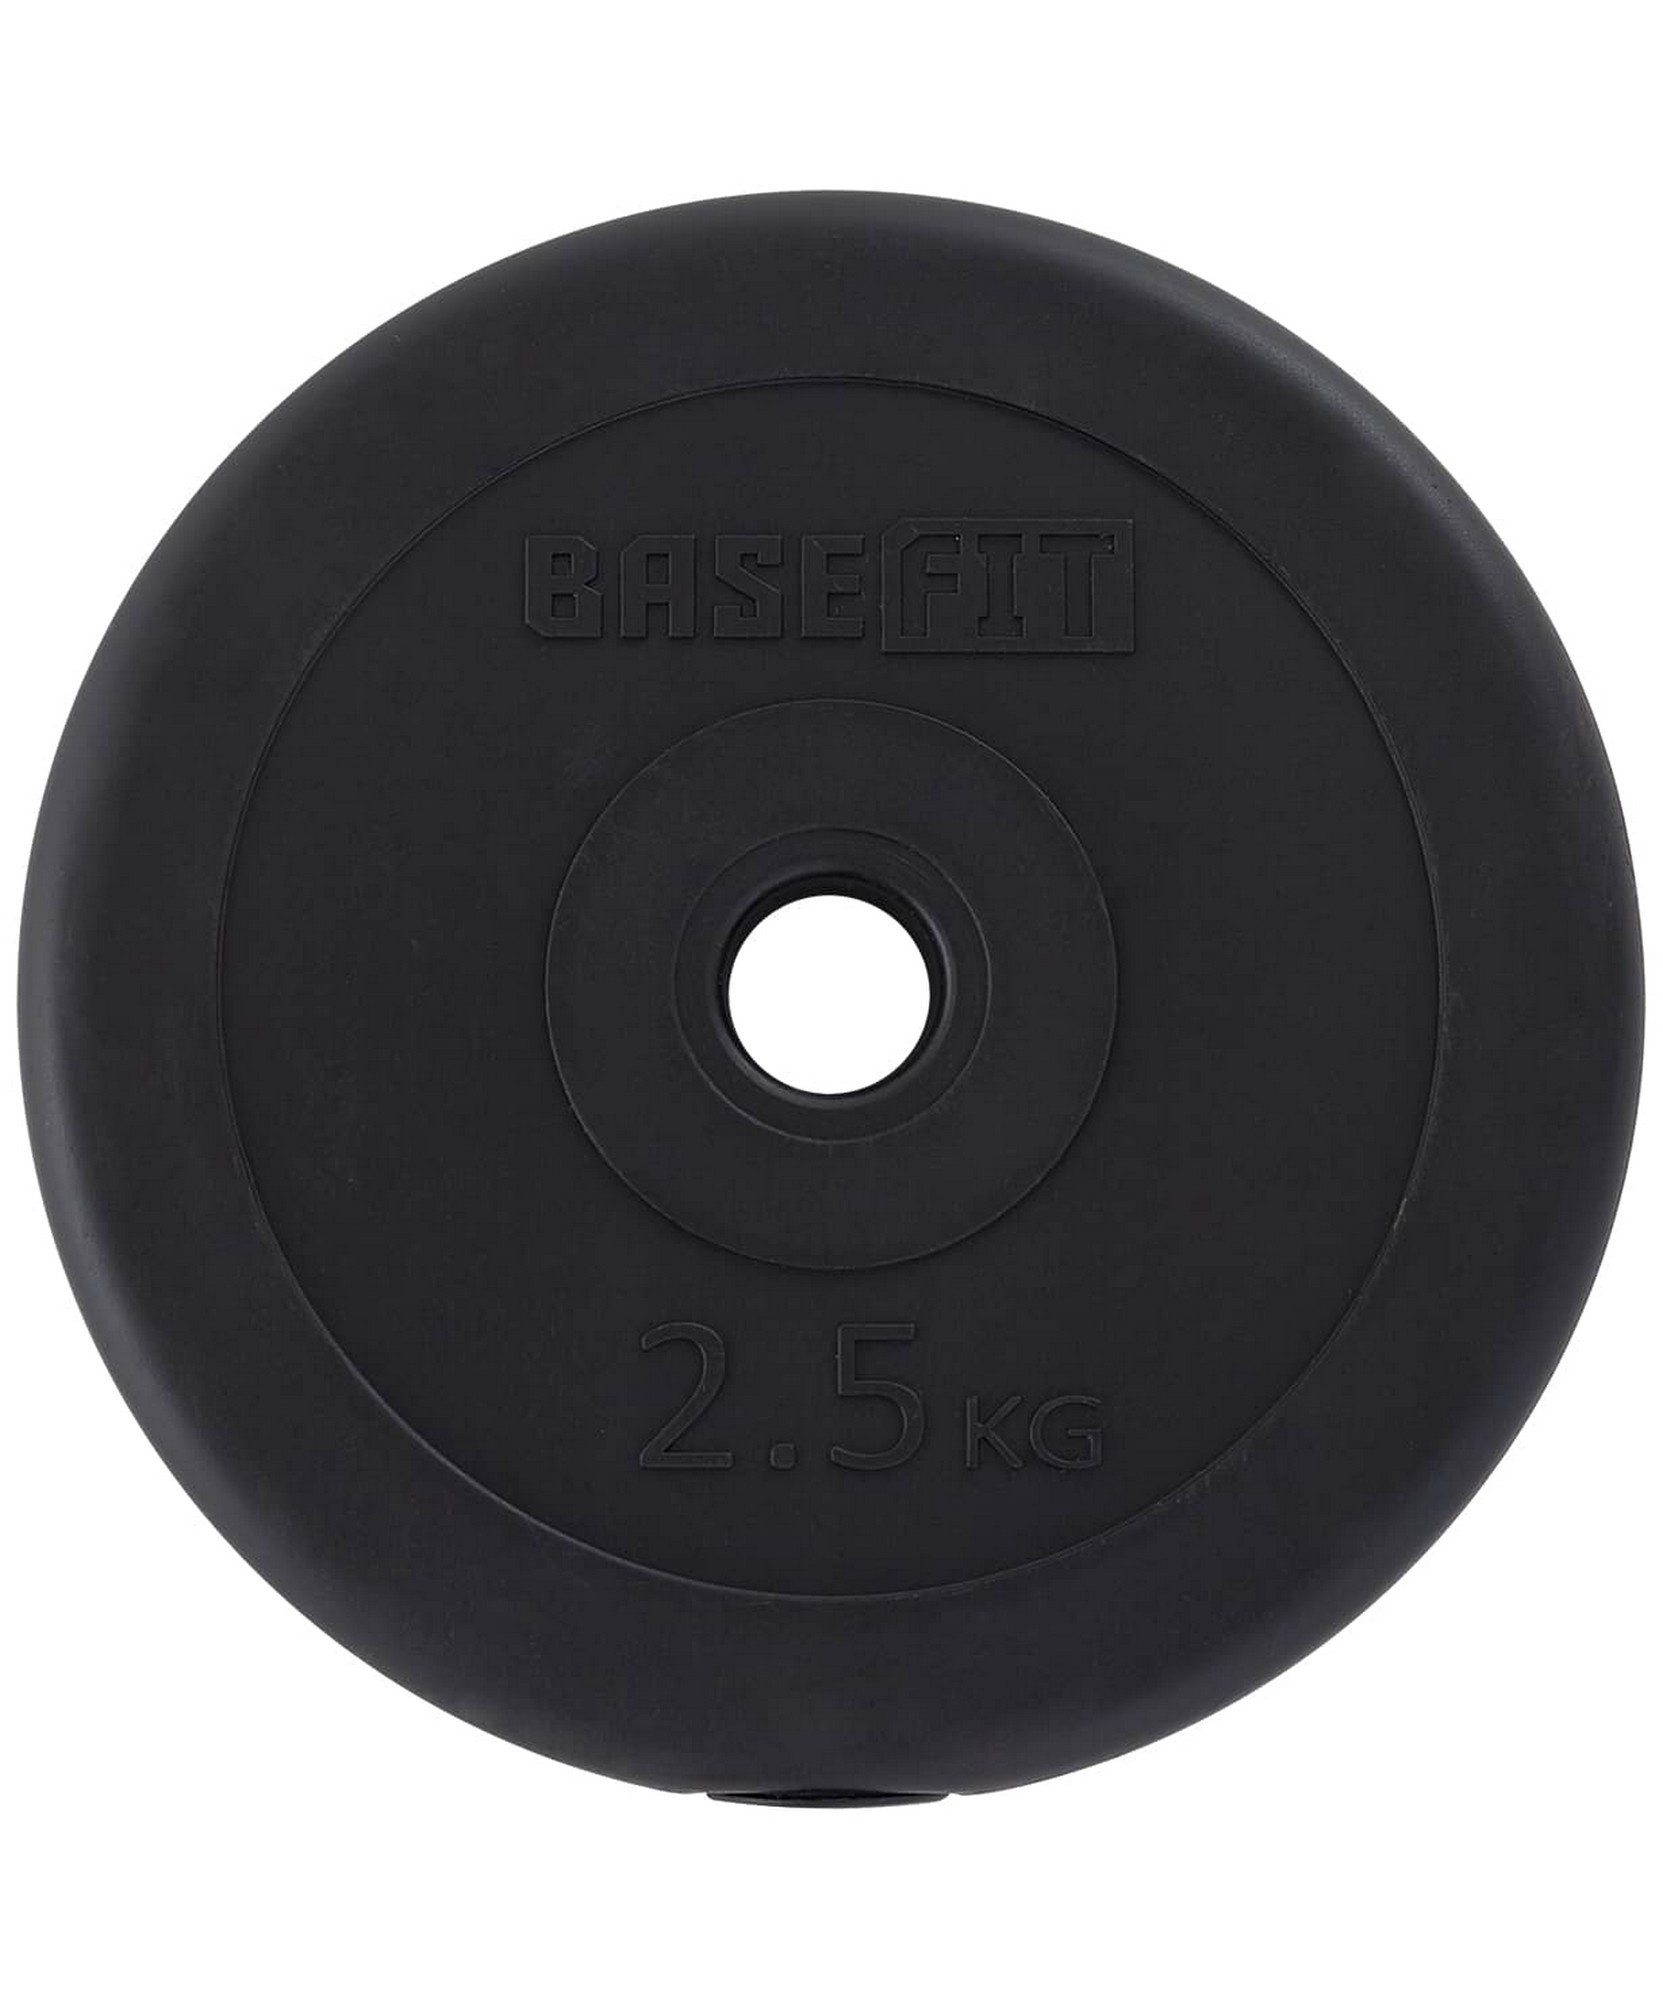 Диск пластиковый 2,5 кг BaseFit d26 мм BB-203 черный